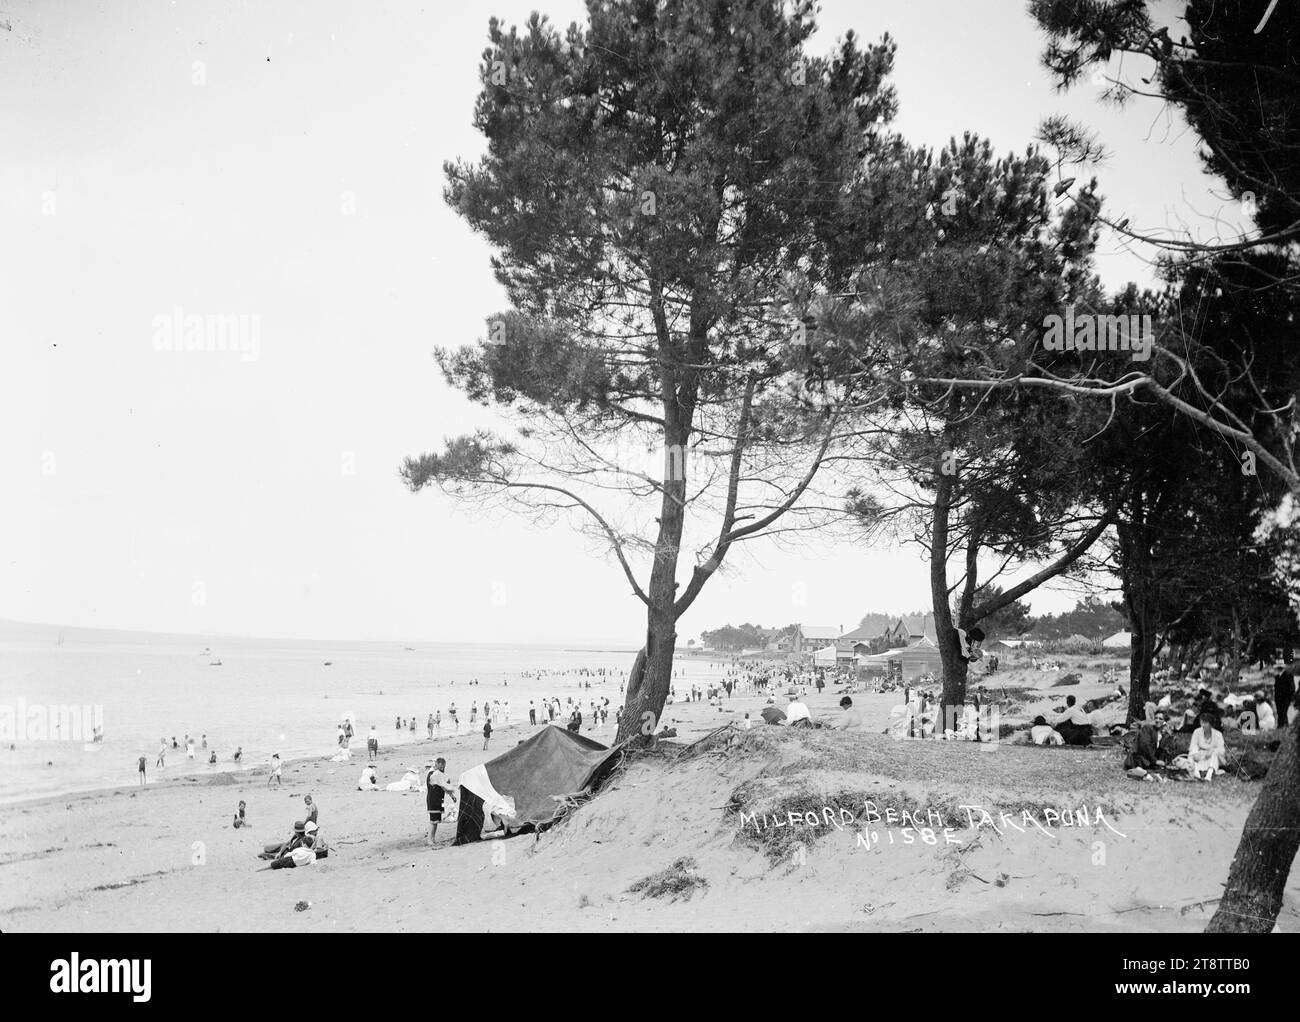 Milford Beach, Auckland, nuova Zelanda, Vista di Milford Beach presa da un'area vicino agli alberi dietro la spiaggia che guarda a sud-est. La gente può essere vista nuotare e camminare sulla spiaggia. ca 1914 Foto Stock